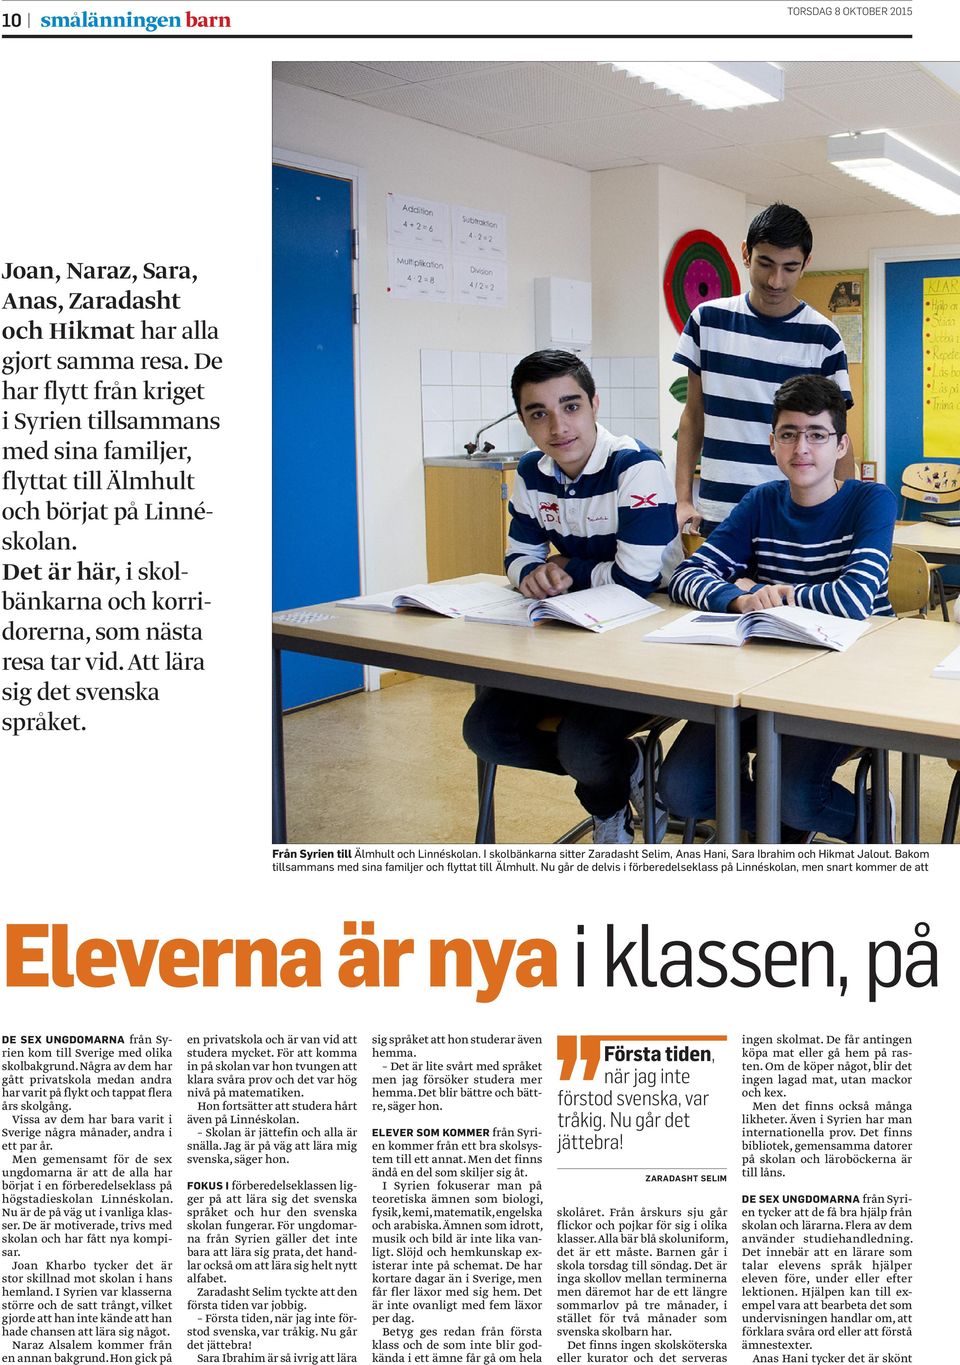 Att lära sig det svenska språket. Från Syrien till Älmhult och Linnéskolan. I skolbänkarna sitter Zaradasht Selim, Anas Hani, Sara Ibrahim och Hikmat Jalout.